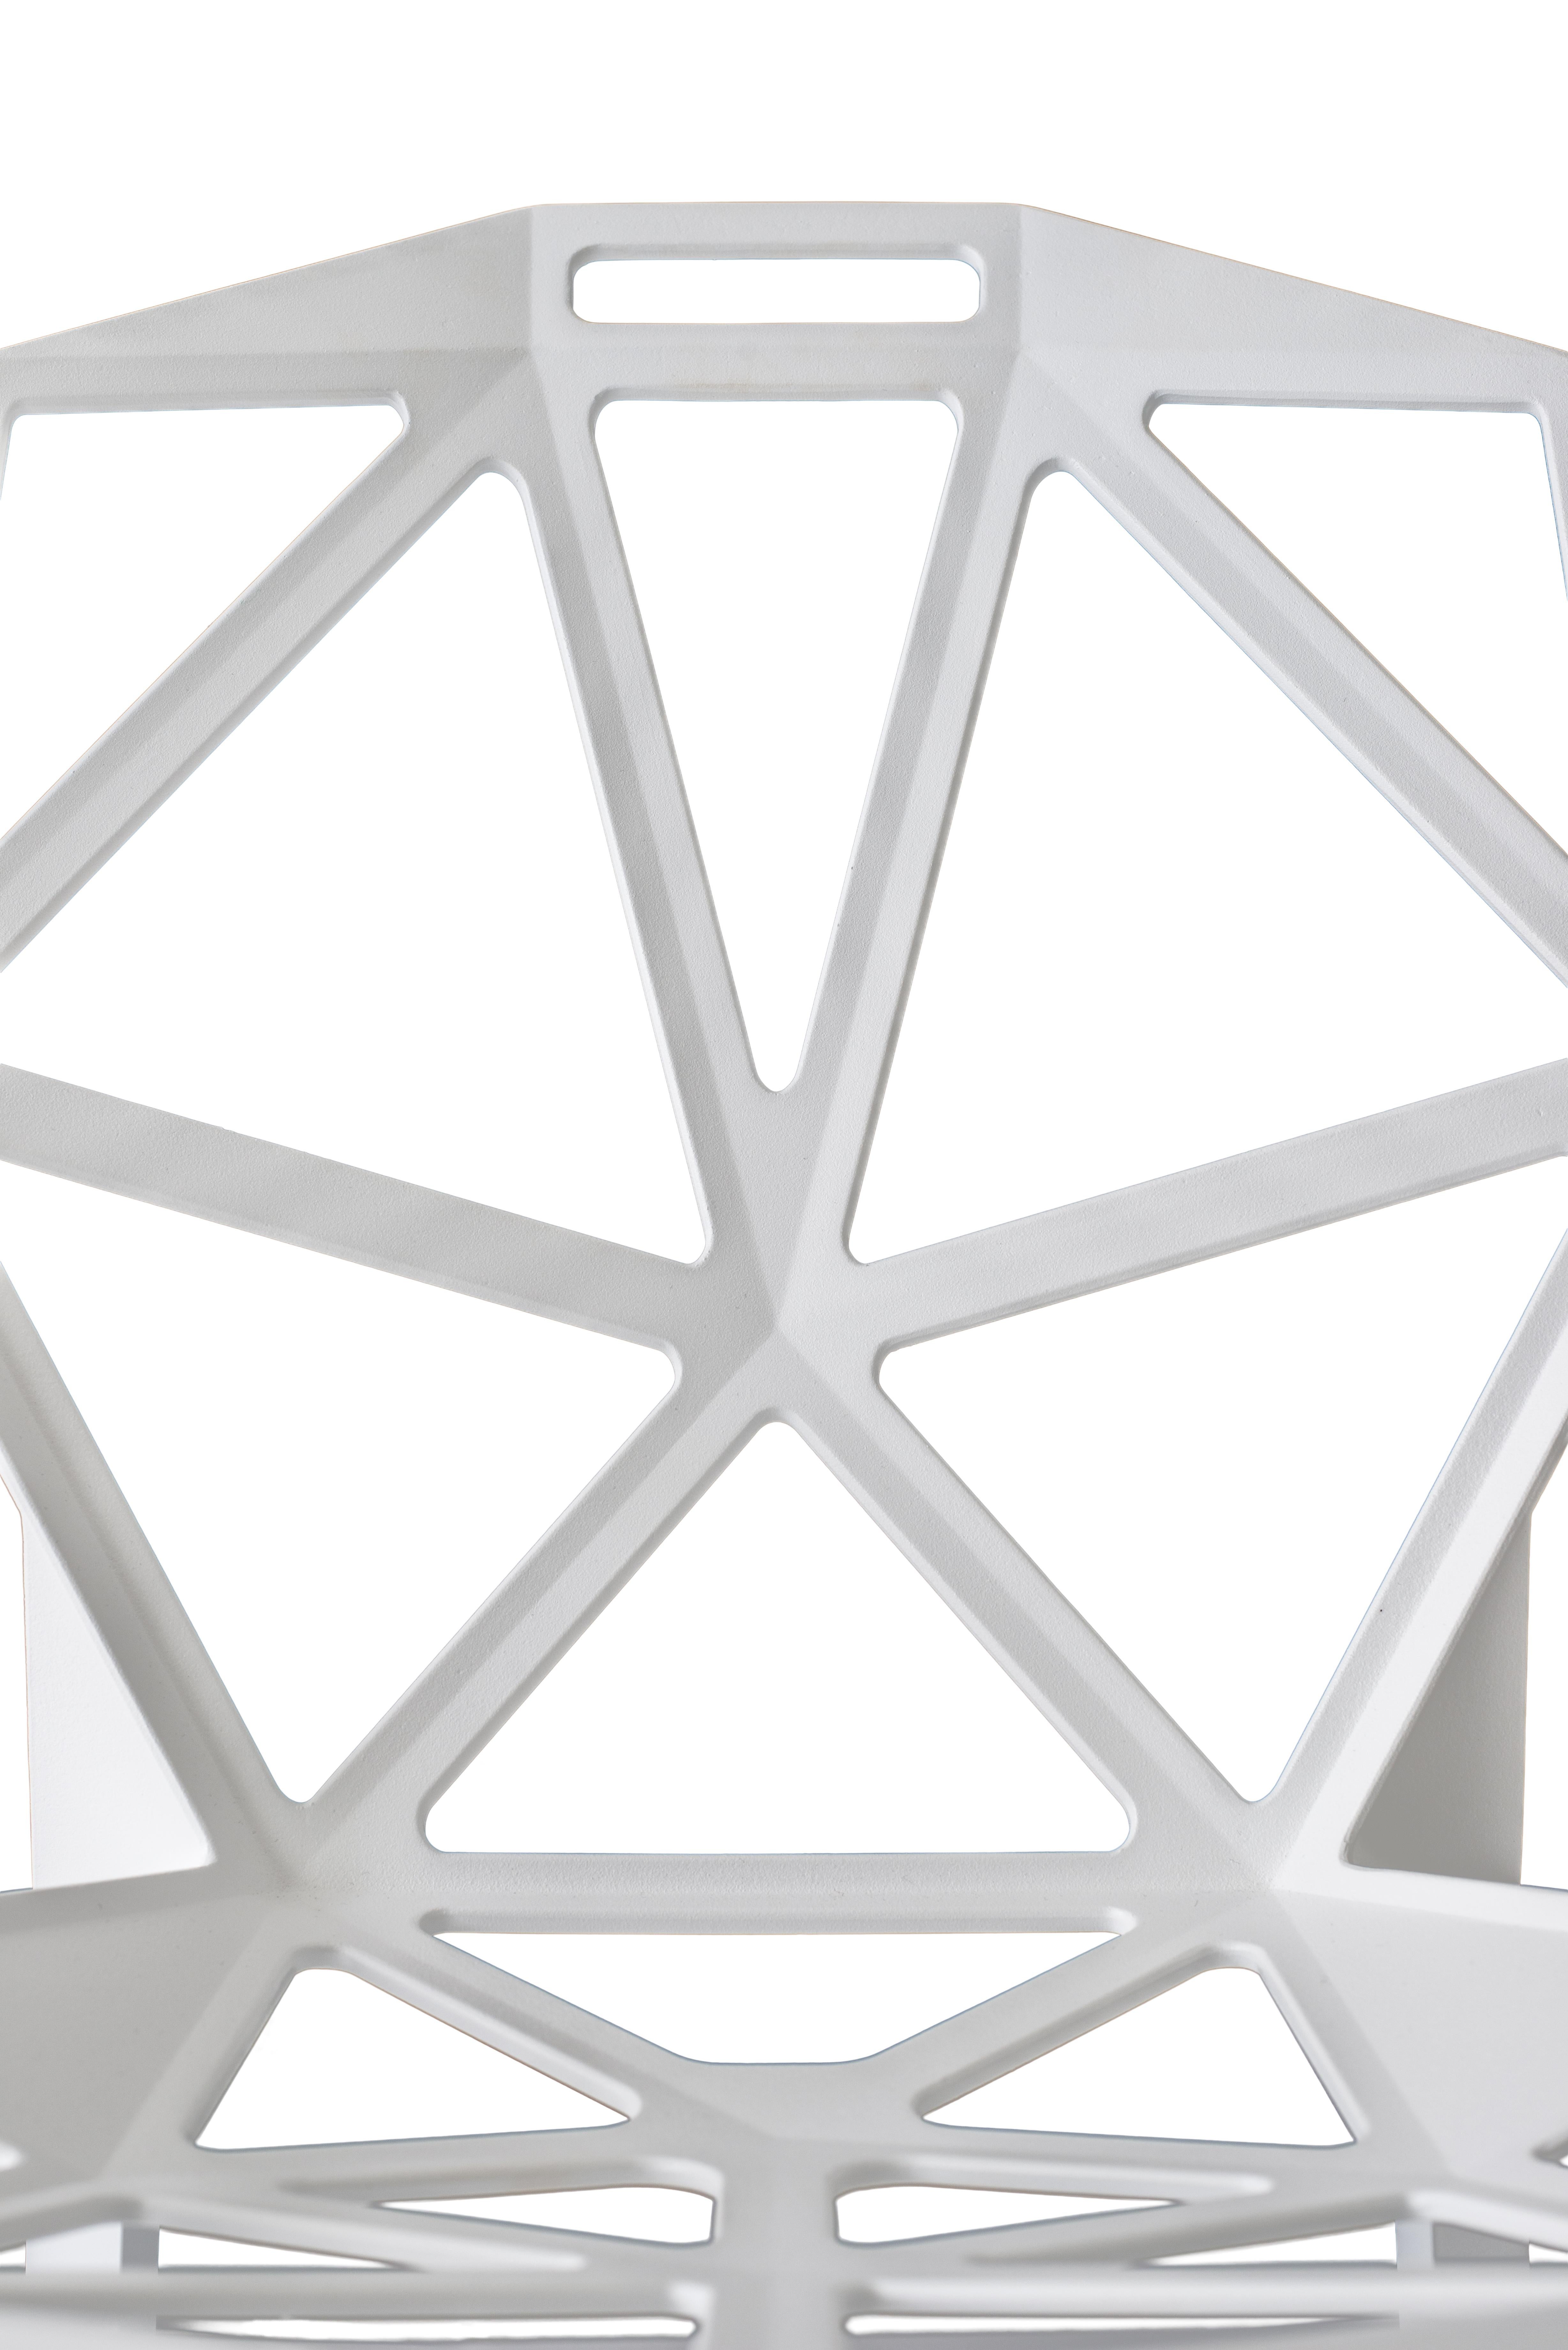 Une coque en aluminium moulé sous pression composée de nombreuses petites faces perforées et triangulaires. Chair_One est en quelque sorte construit comme un ballon de football, c'est-à-dire avec une série d'éléments plats reliés entre eux par des